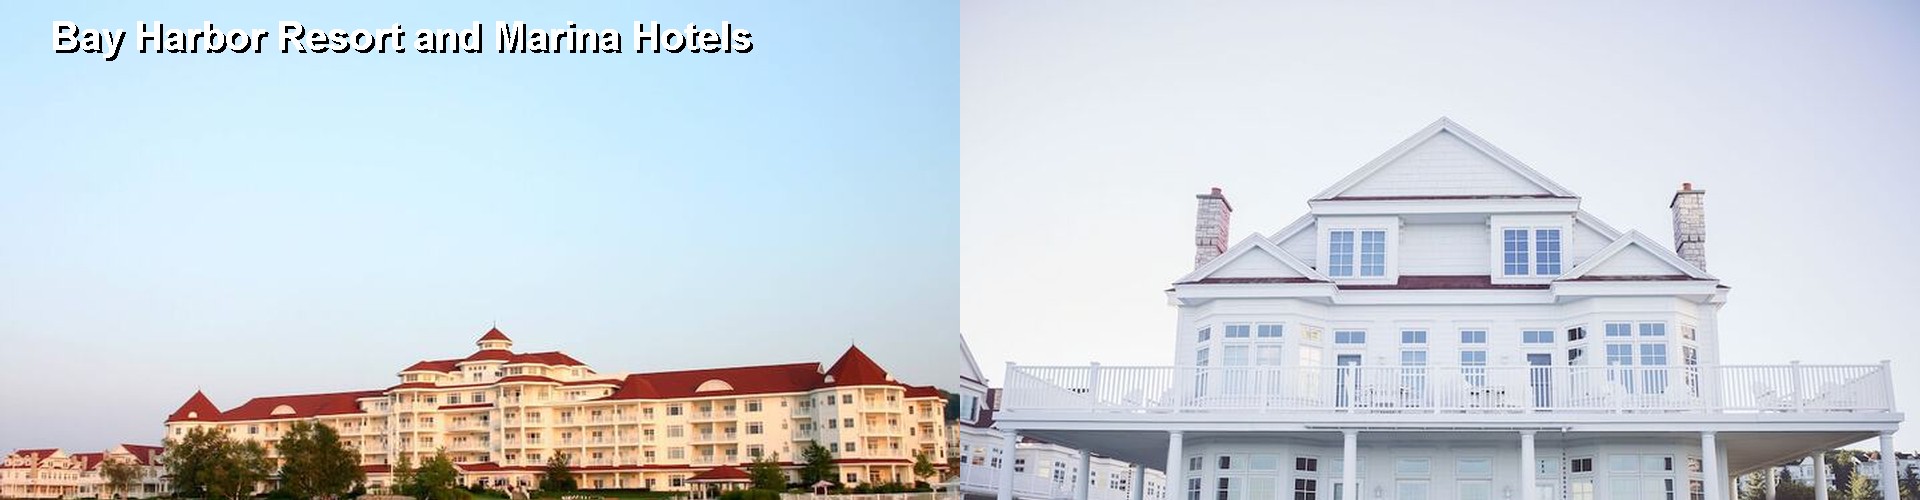 5 Best Hotels near Bay Harbor Resort and Marina